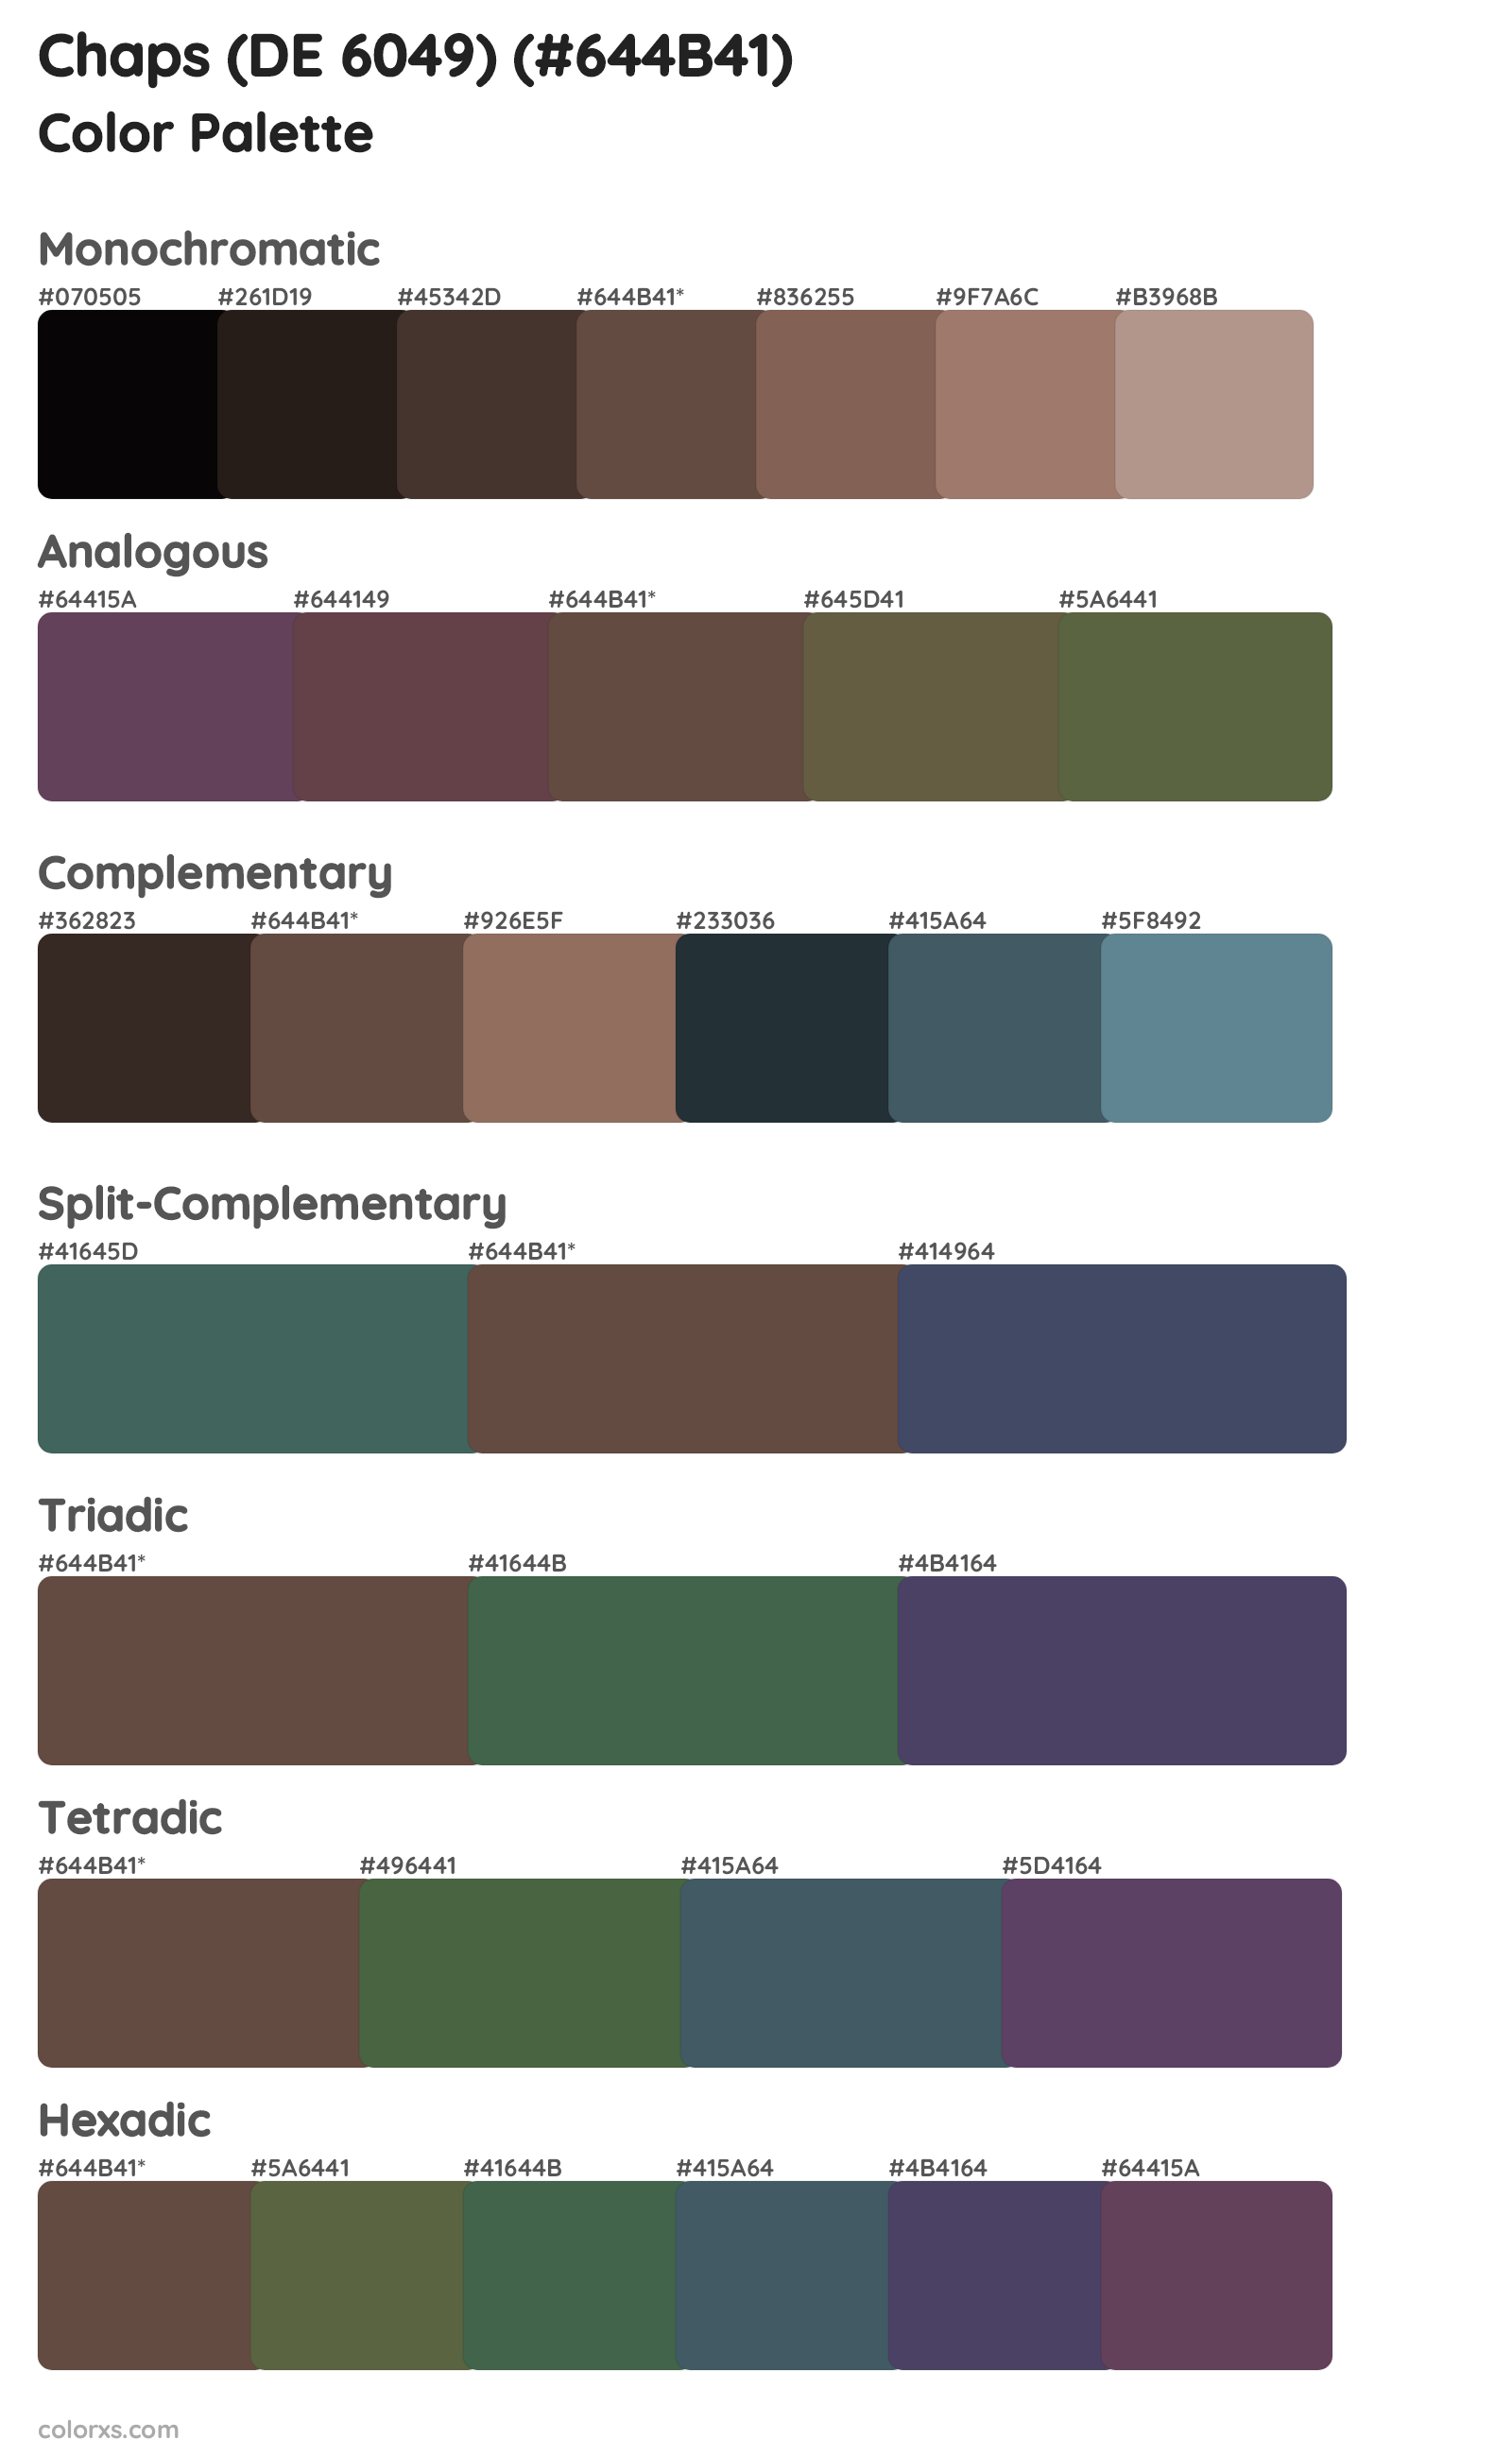 Chaps (DE 6049) Color Scheme Palettes